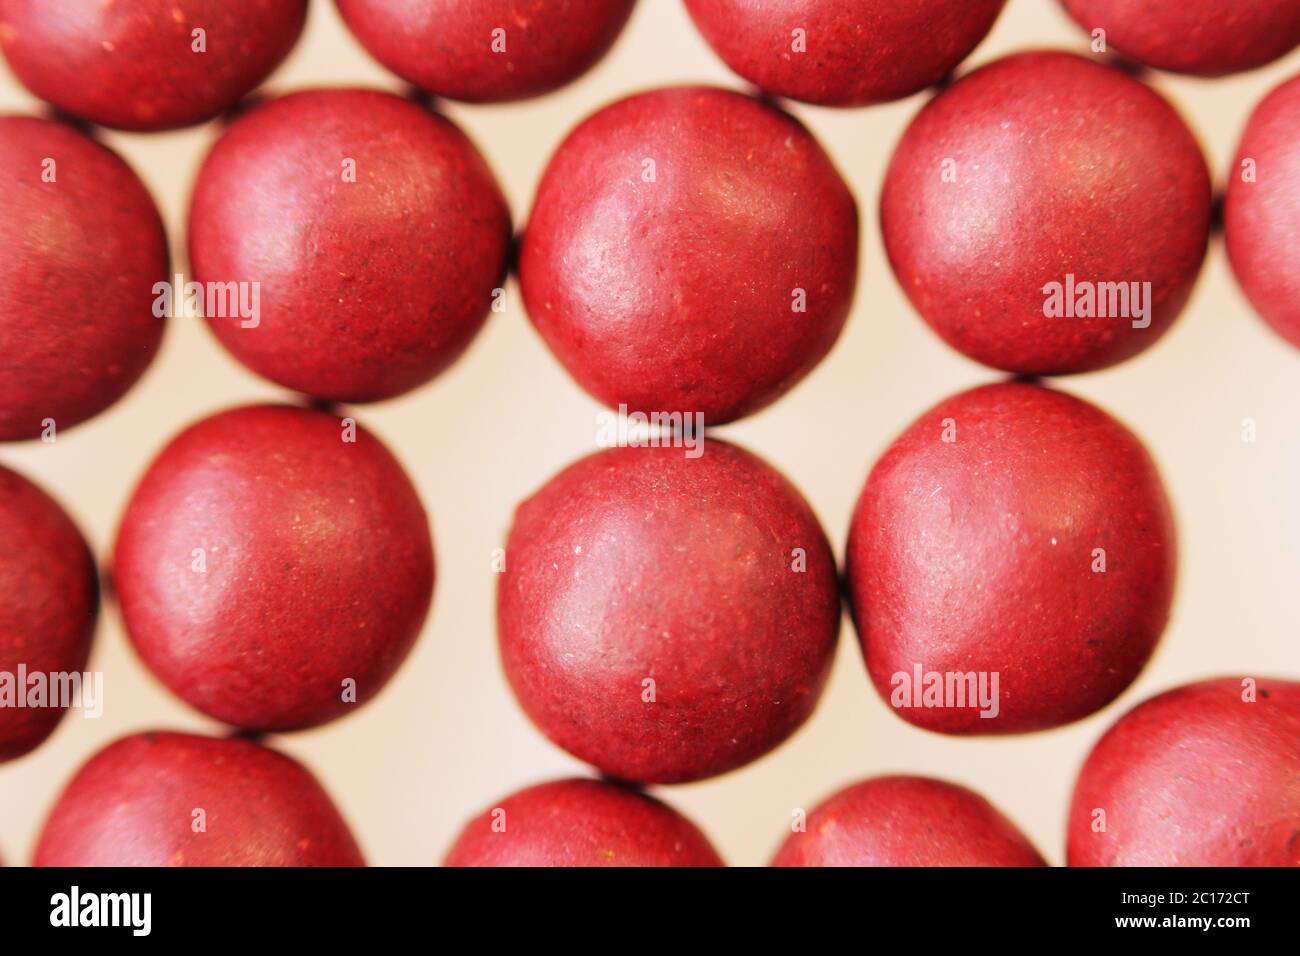 Macro foto di molte pillole a forma di sfera rossa. Medicina popolare tibetana dal complesso di erbe. Foto Stock